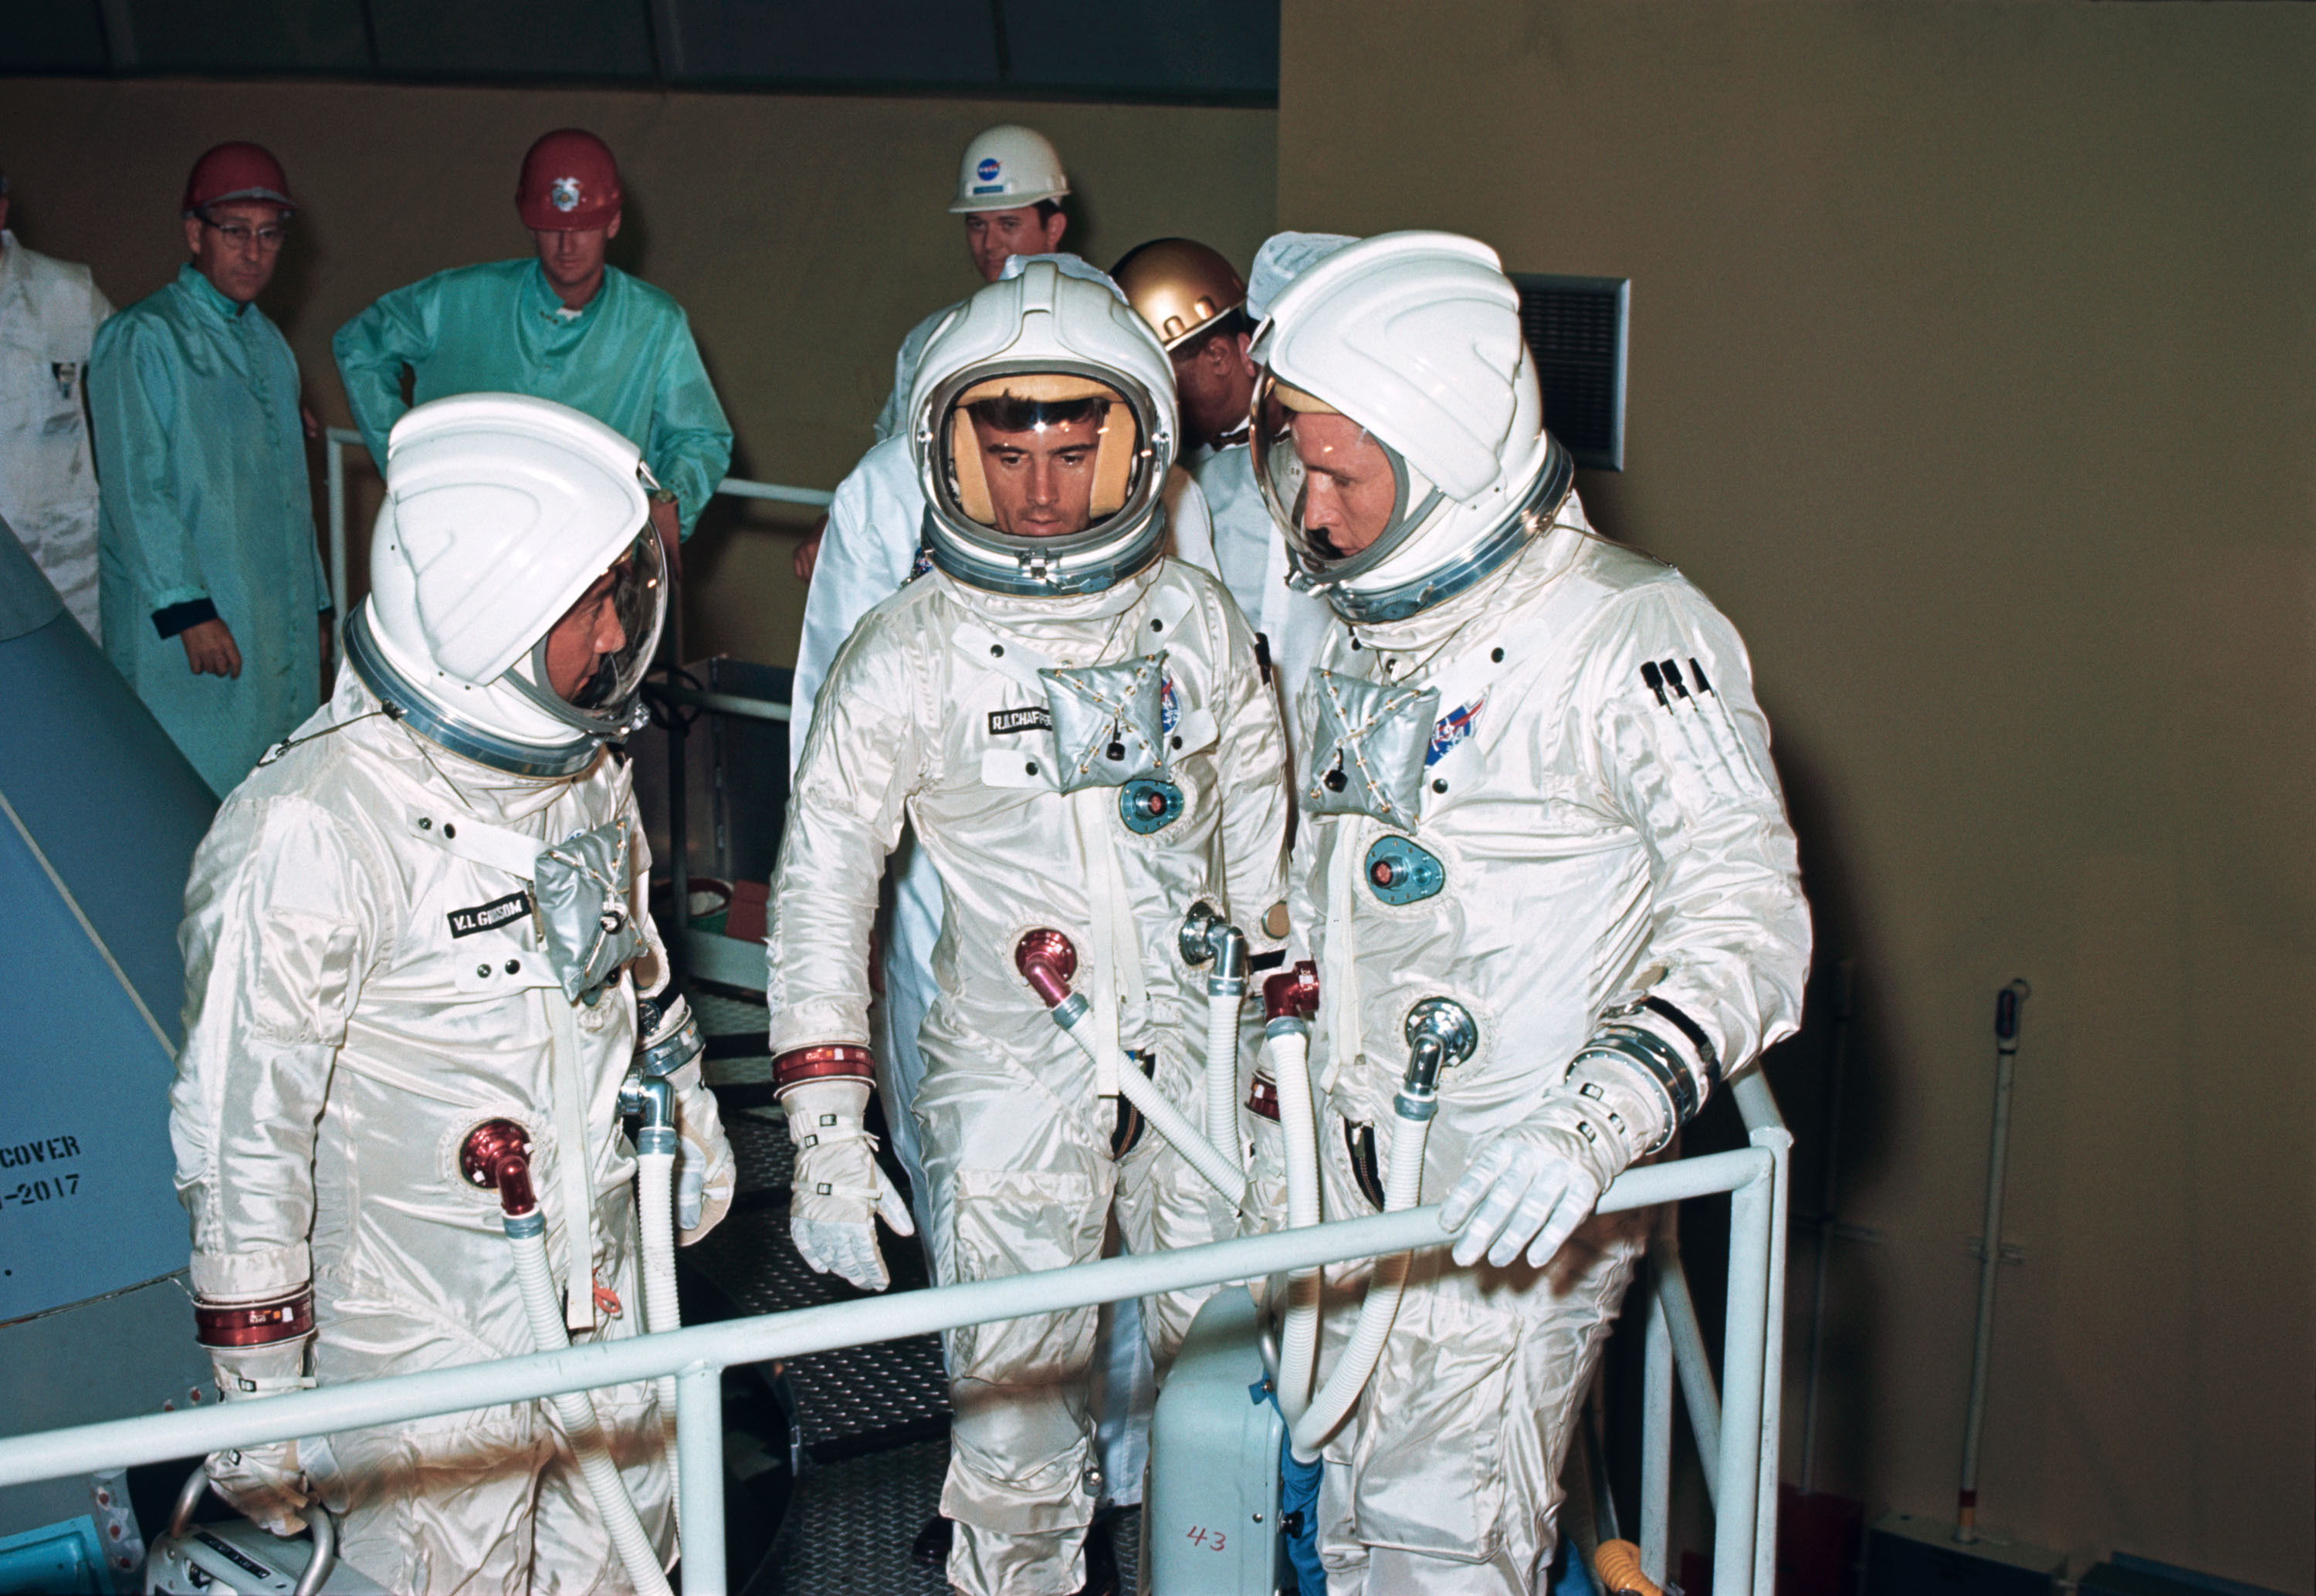 Apollo 1 suited